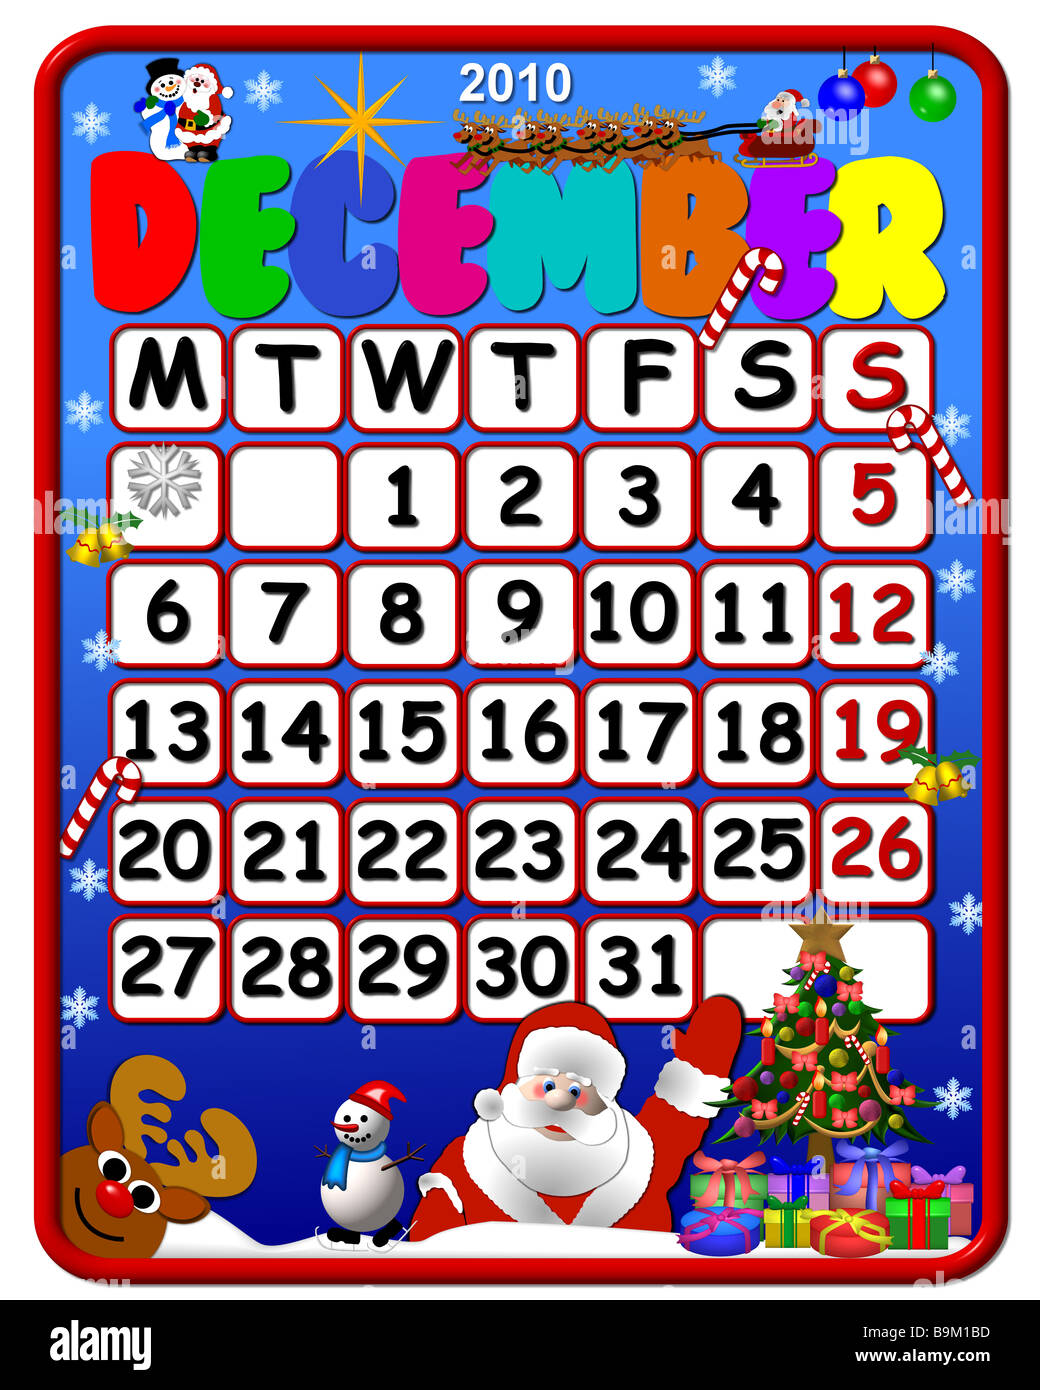 Calendar December 2010 Stock Photo Alamy